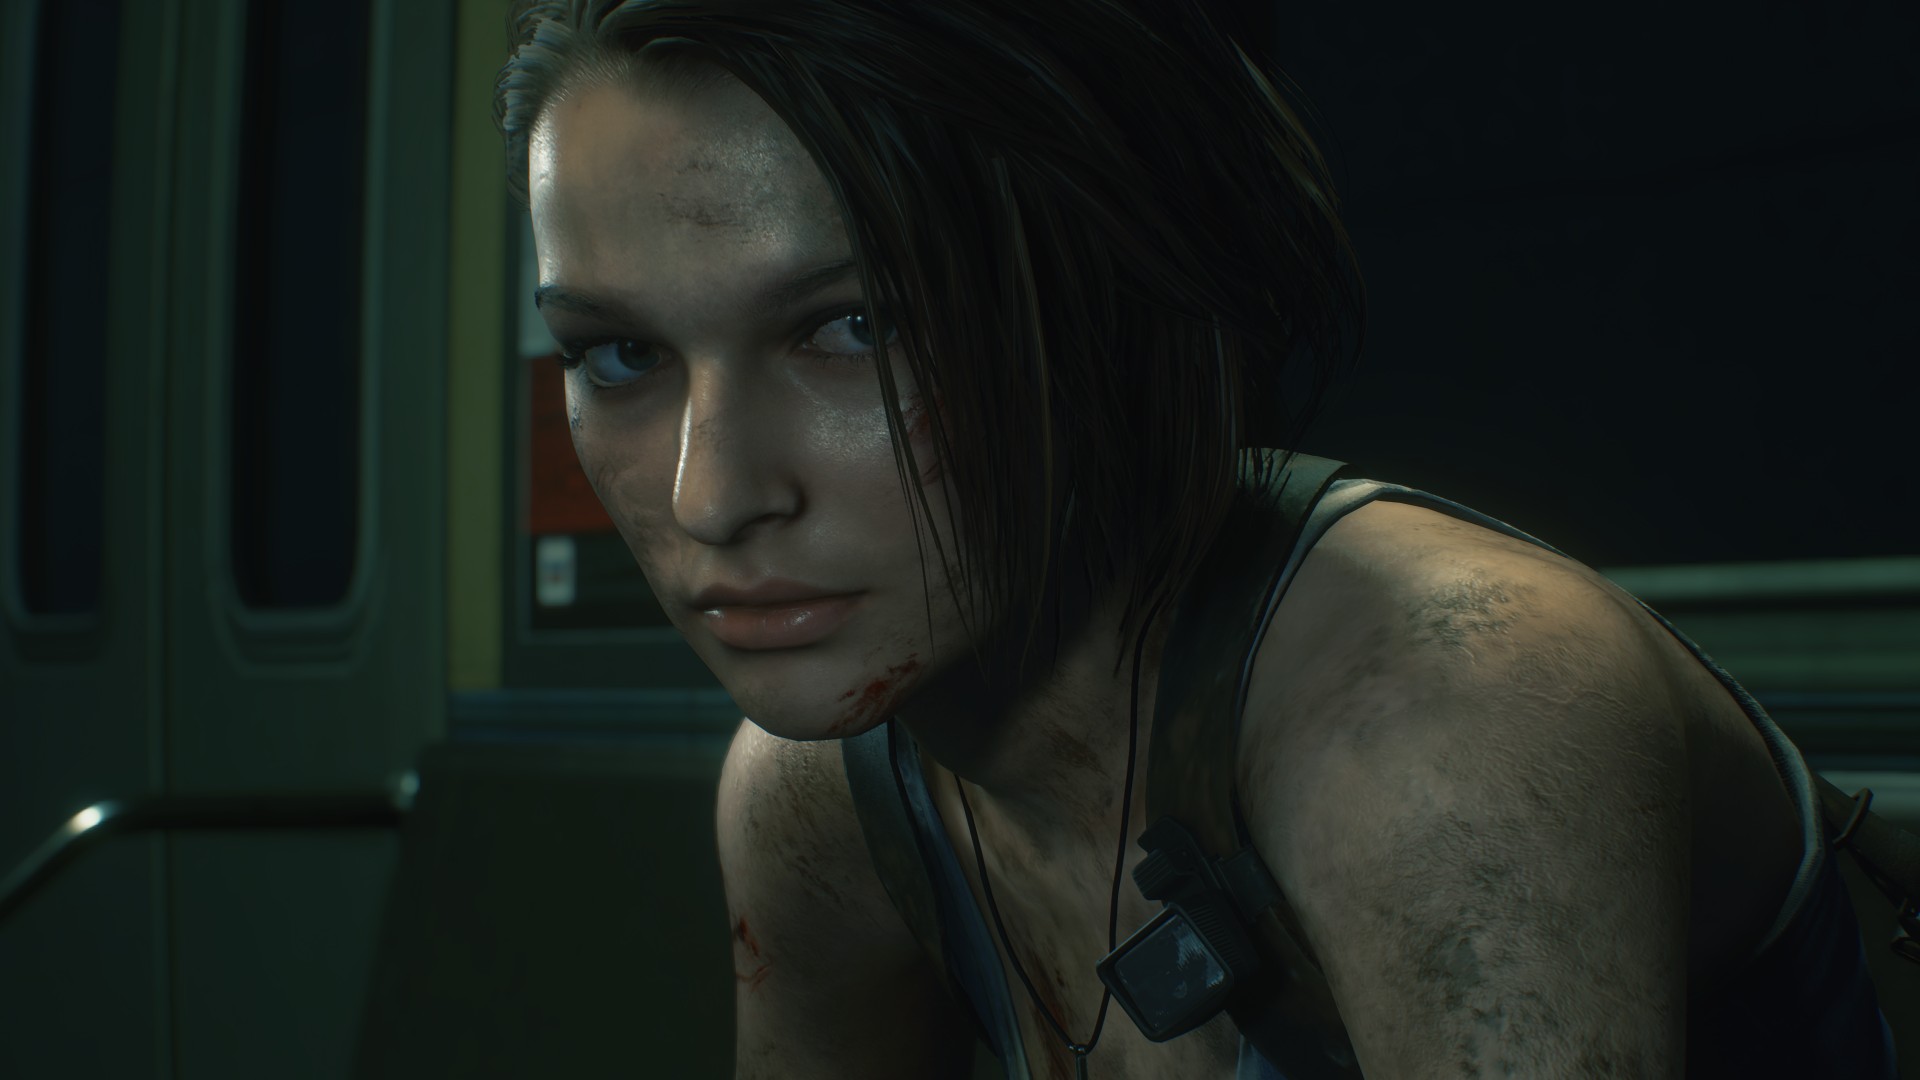 Date de sortie de “Resident Evil 4”, histoire, distribution, lieux, autres détails importants